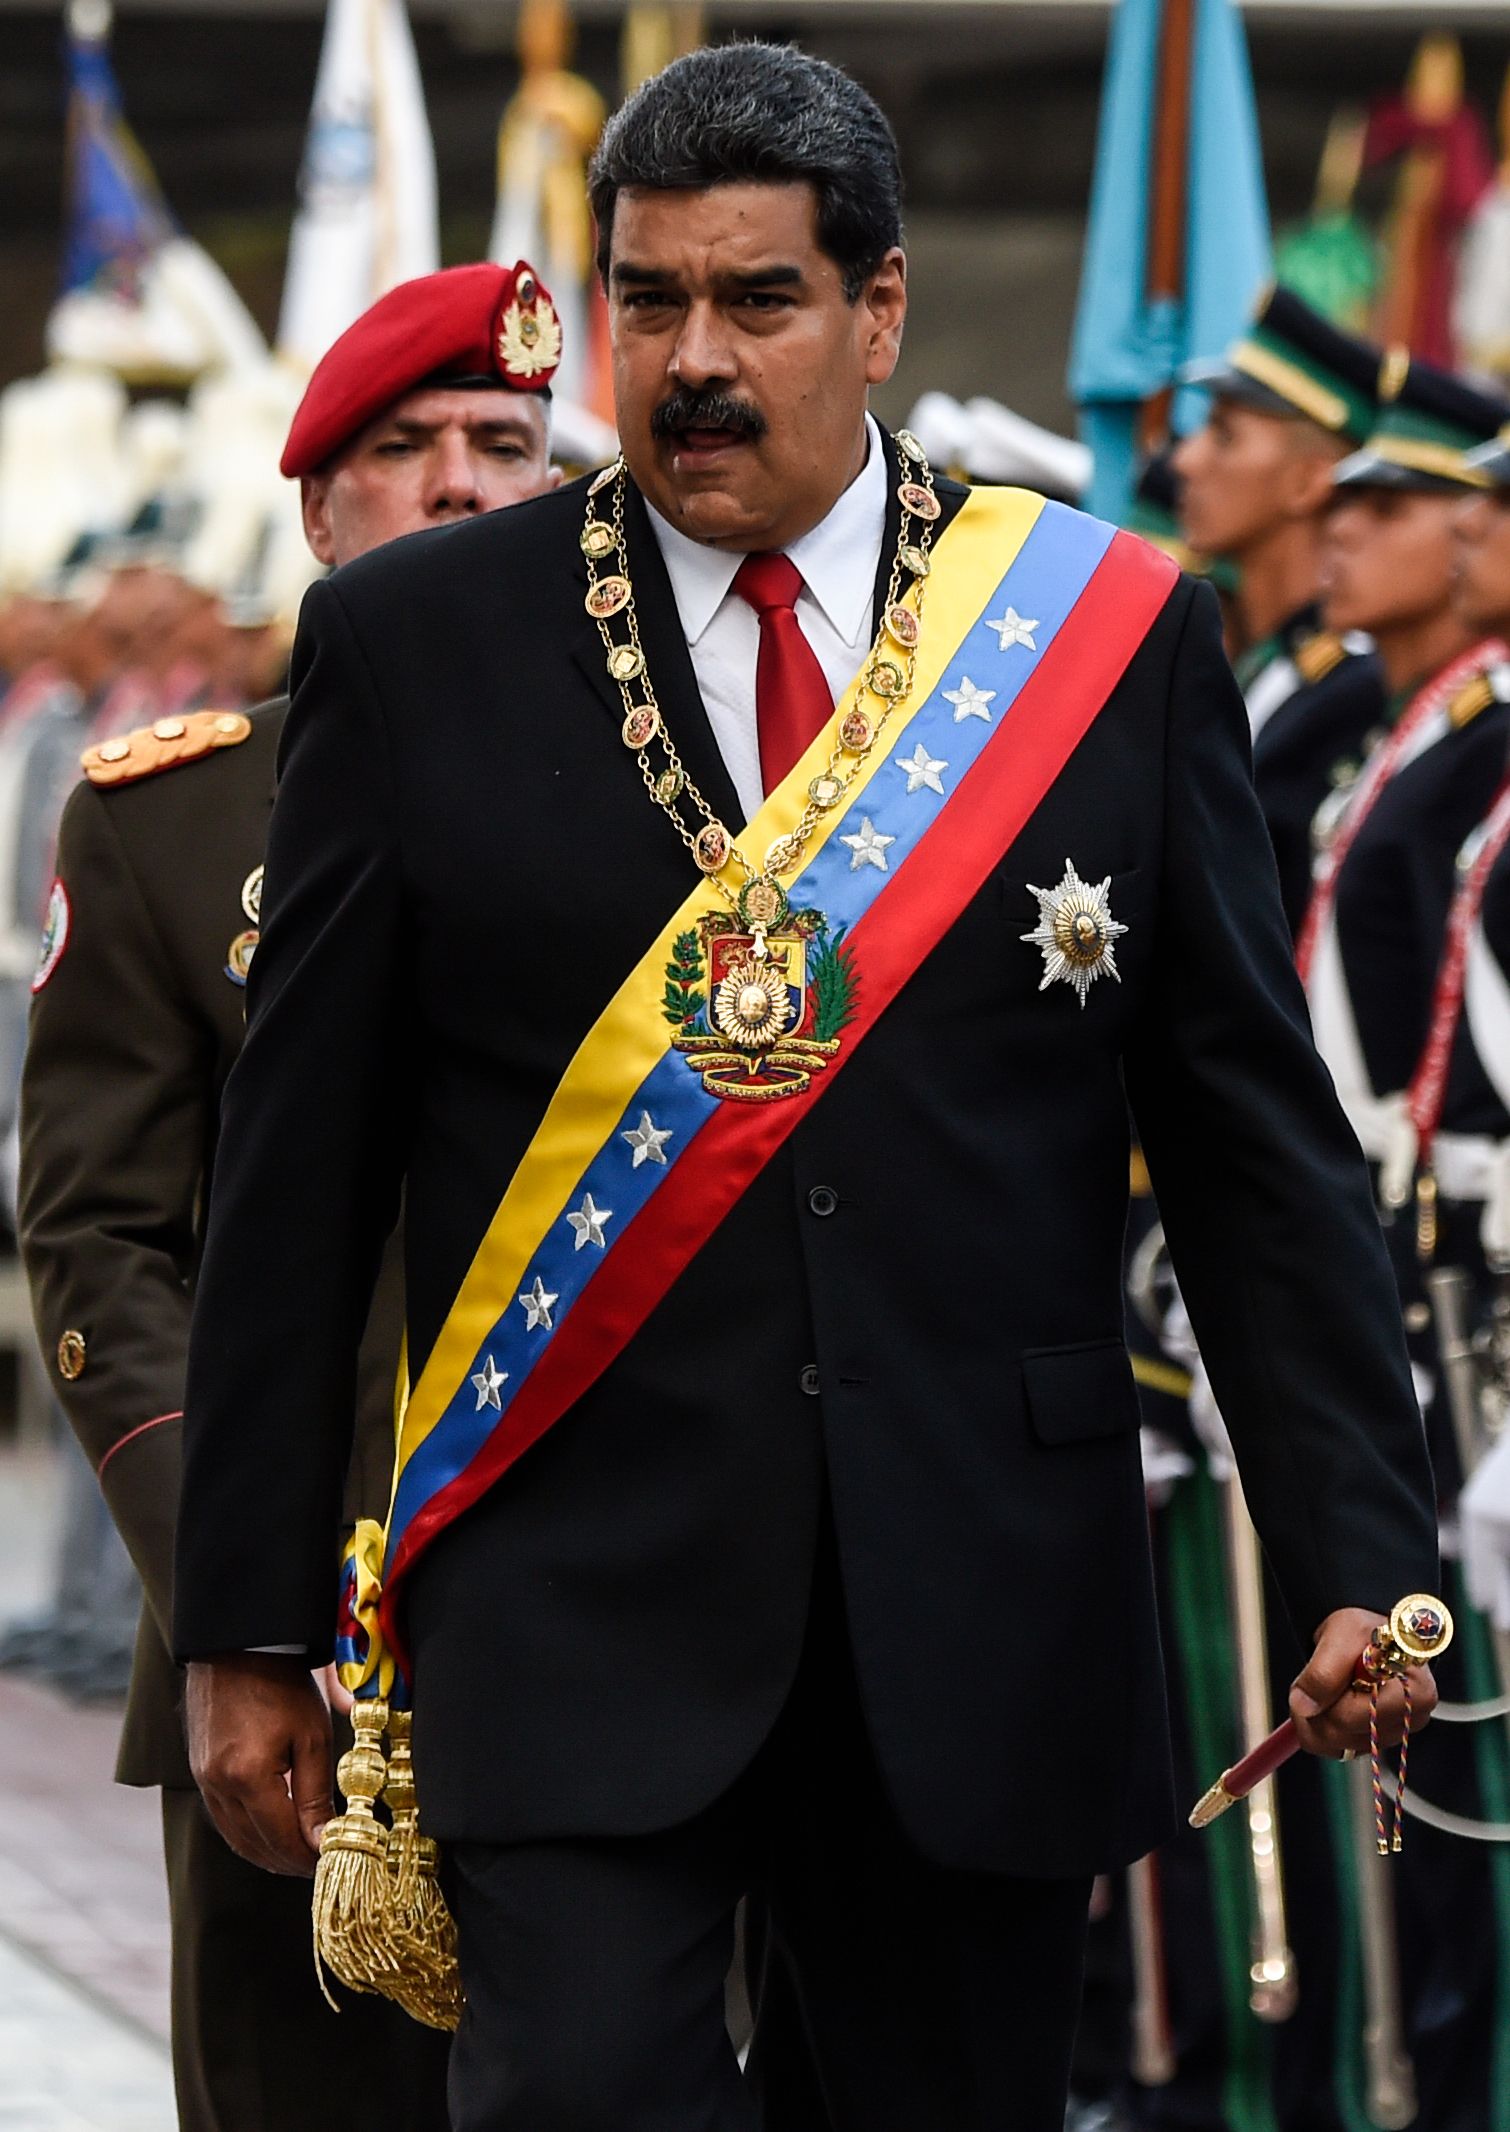 نيكولاس مادورو الرئيس الفنزويلى